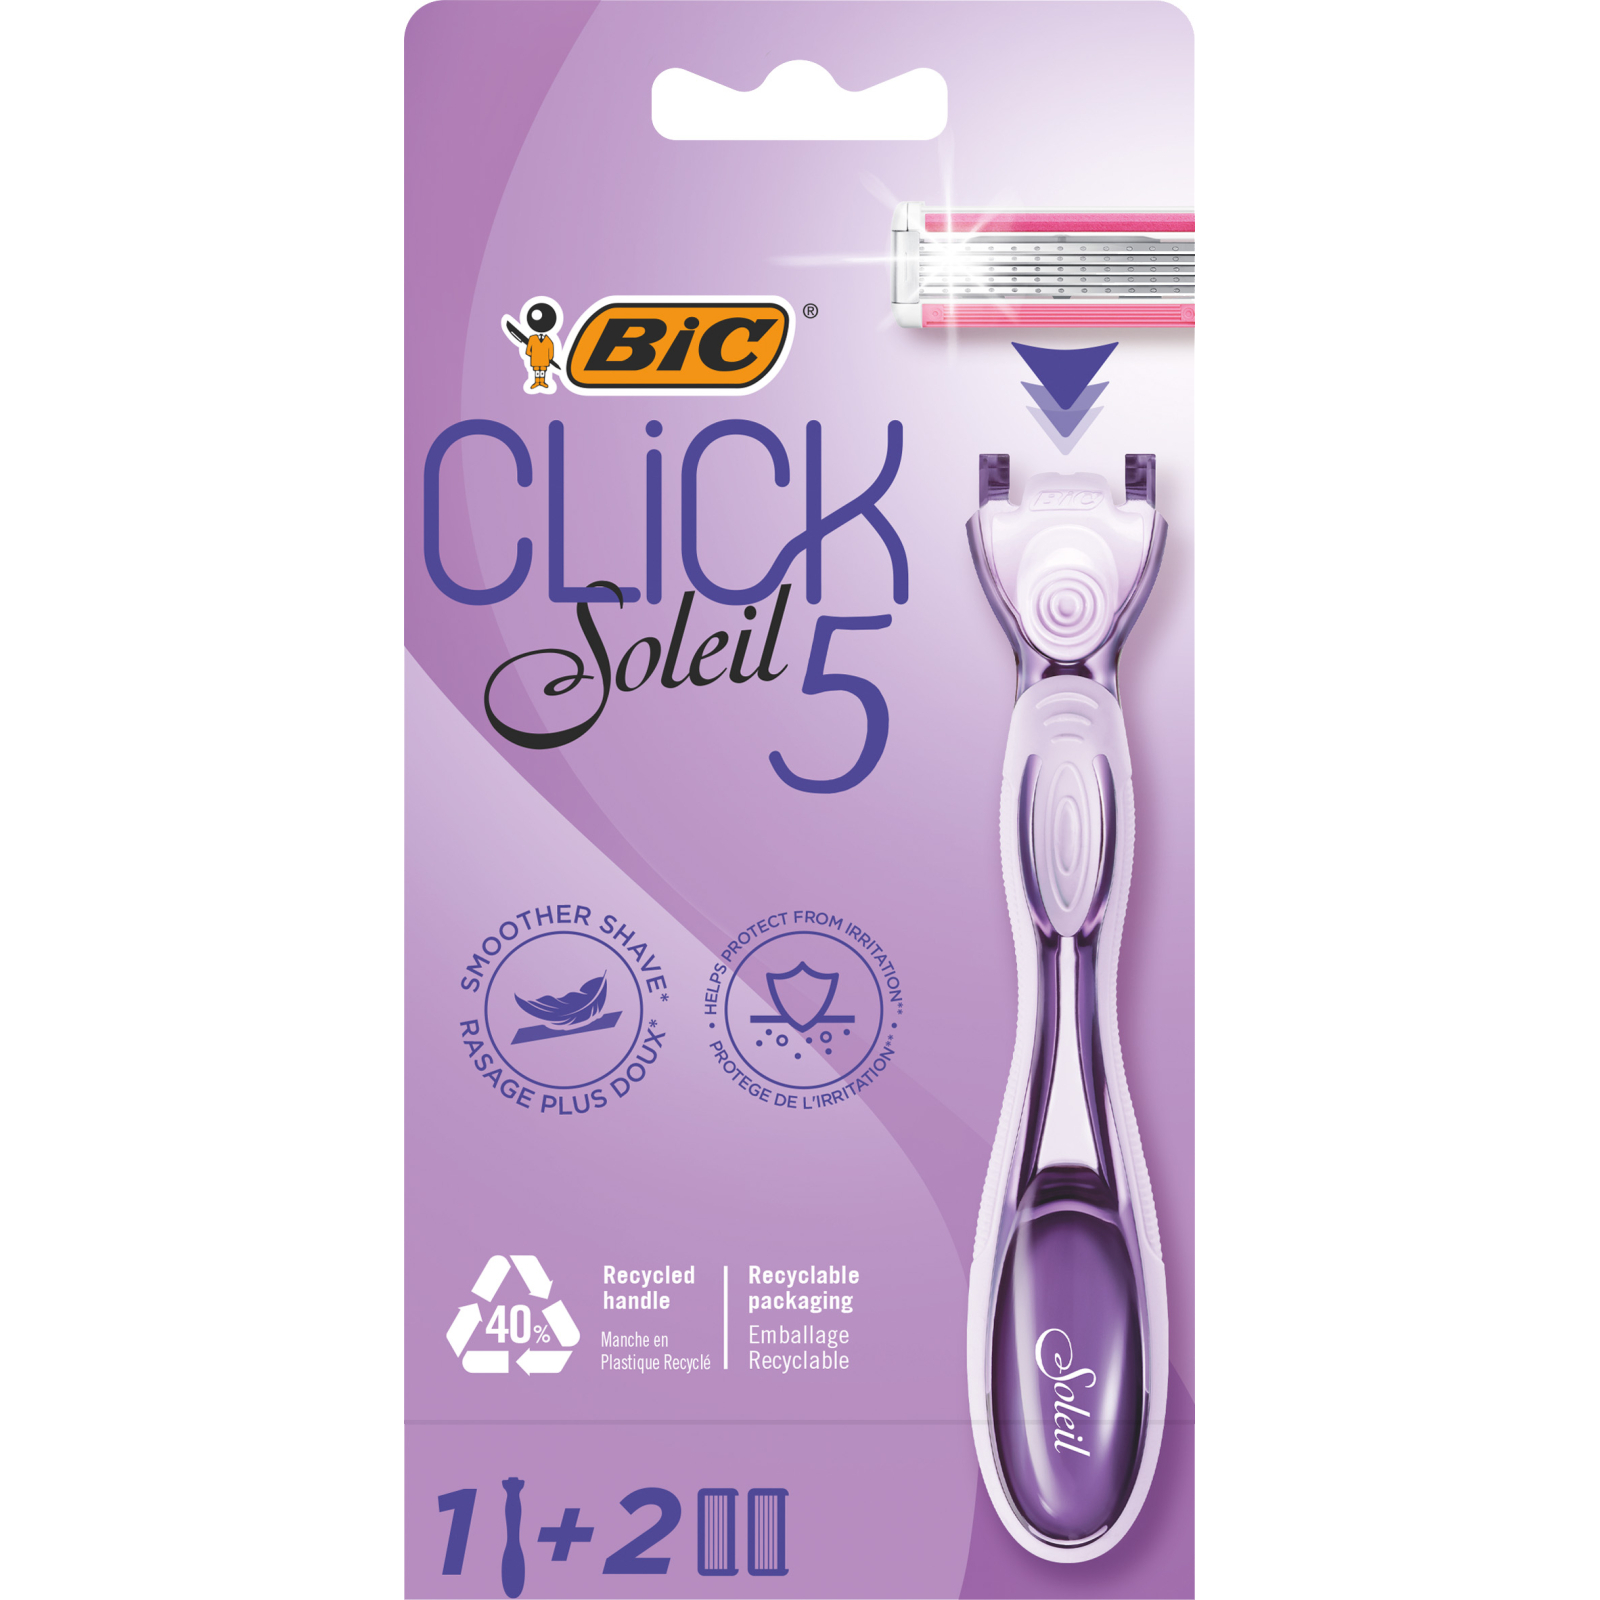 Бритва Bic Click Soleil 5 с 2 сменными картриджами (3086123680227)